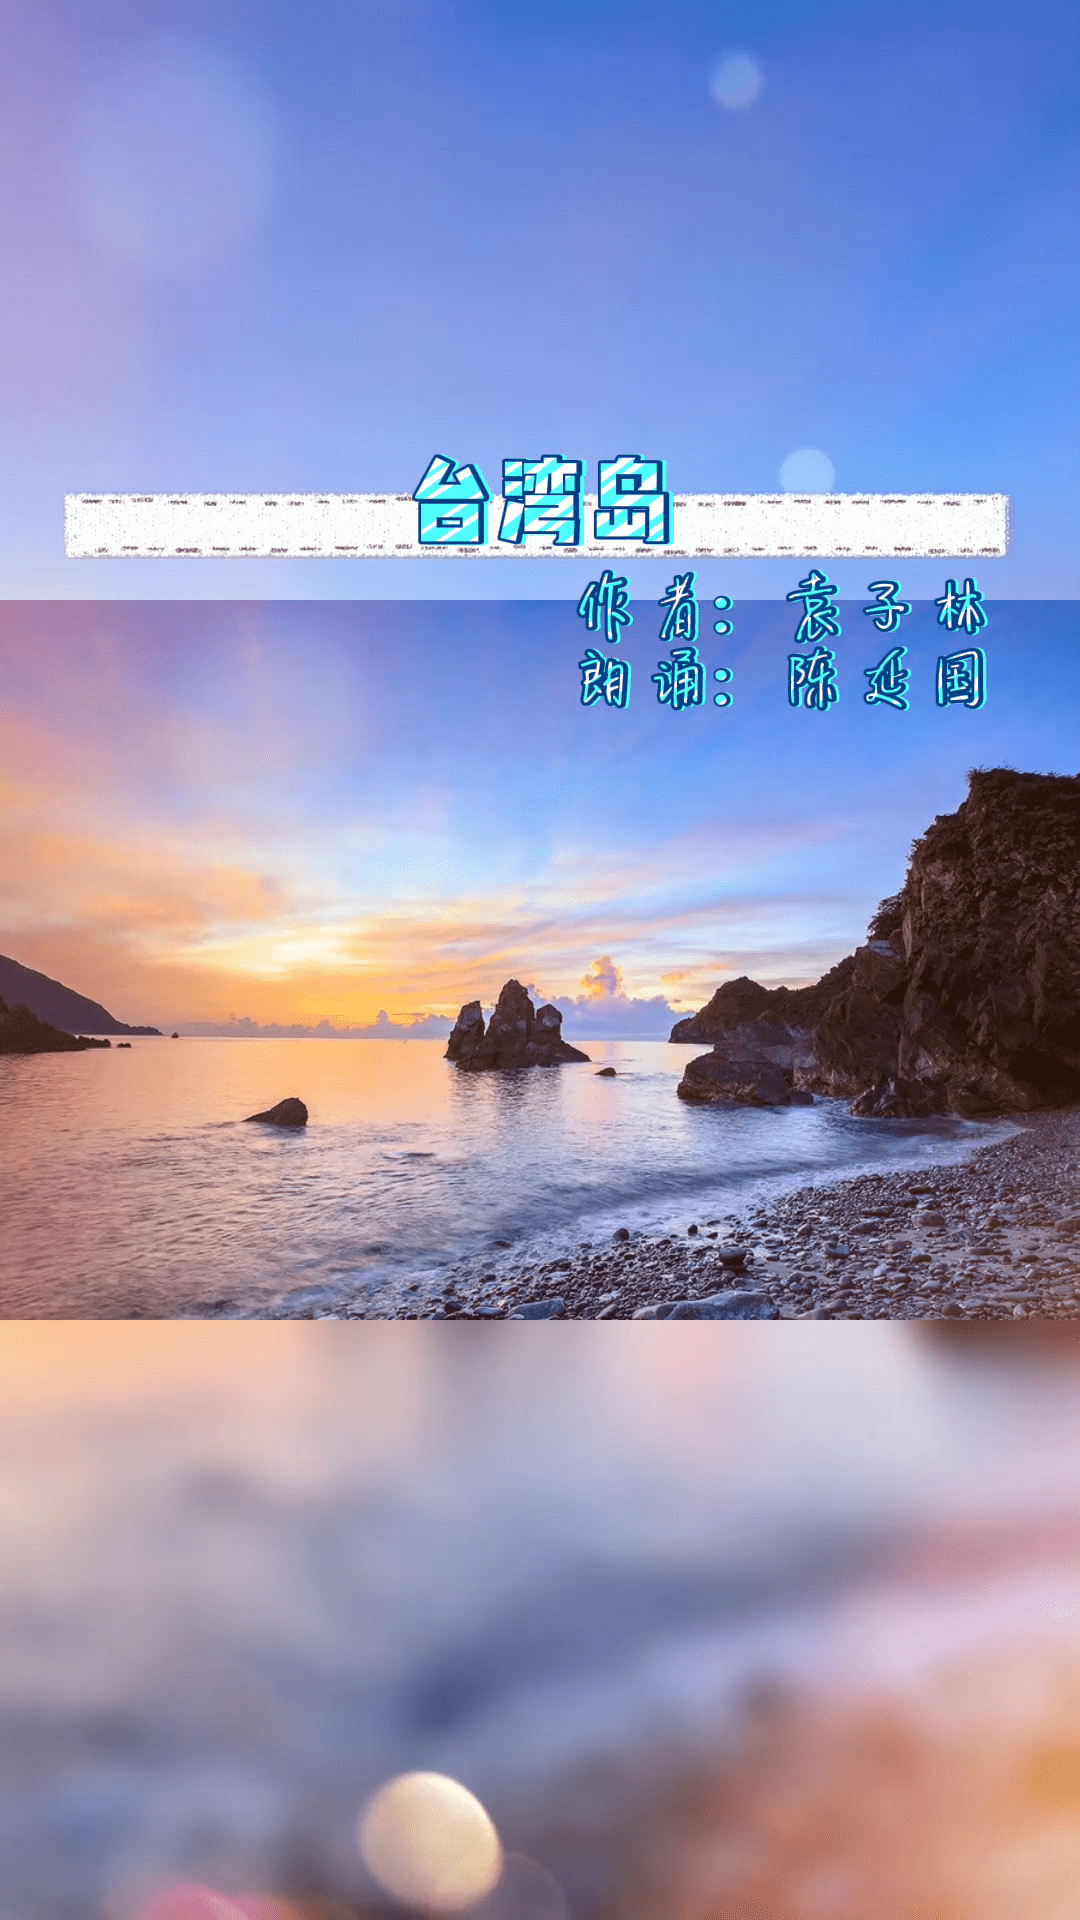 台湾岛:阿里山是船帆,字字句句皆是泪